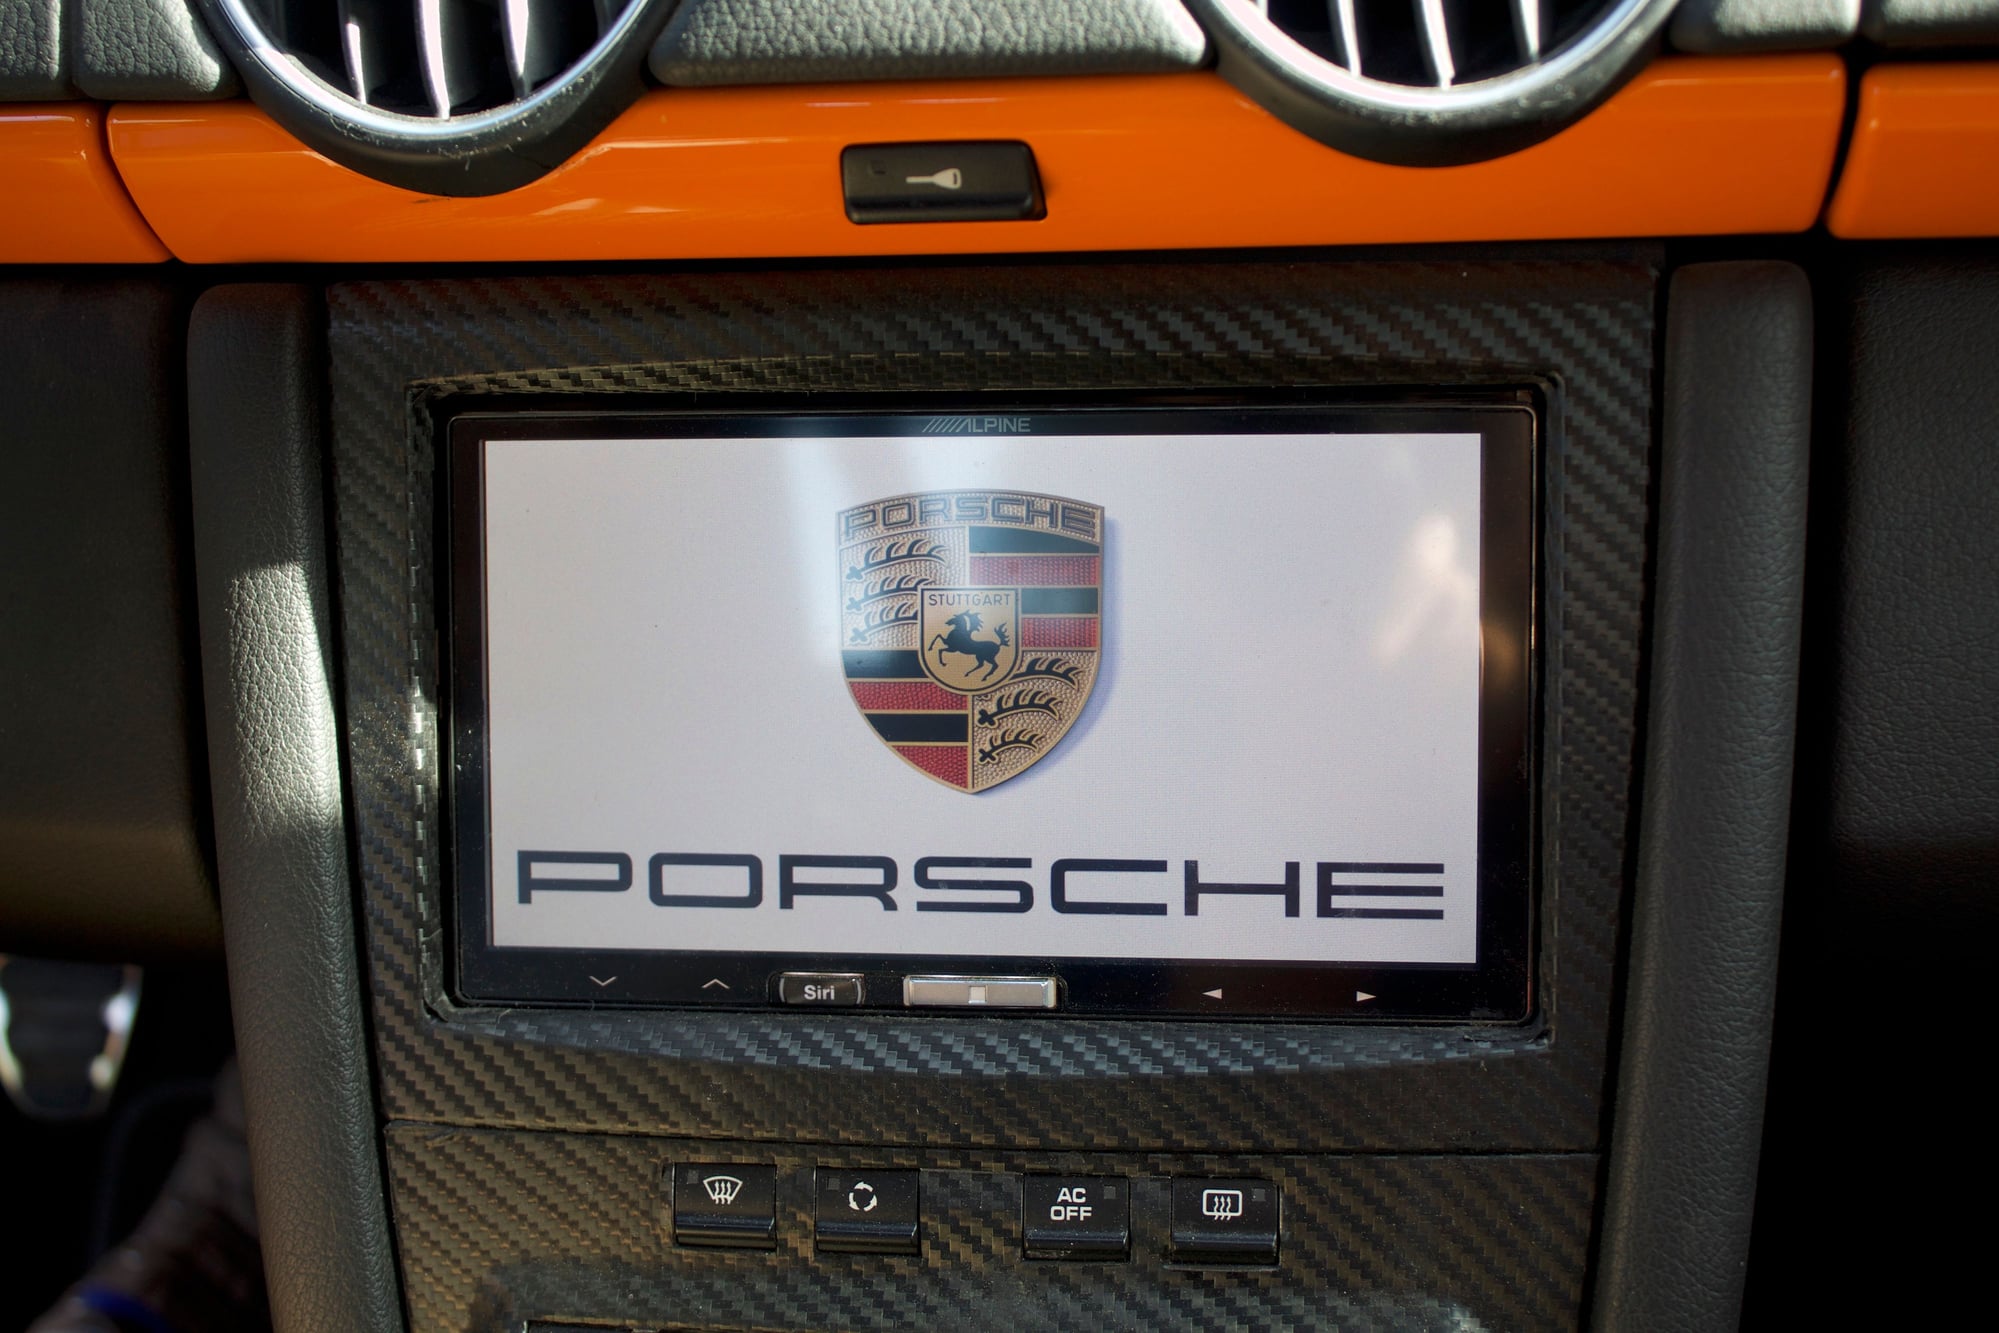 2008 Porsche Boxster - 2008 Porsche Boxster Limited Edition - Used - VIN WP0CA29828U710682 - 54,000 Miles - 6 cyl - 2WD - Manual - Convertible - Orange - Palo Alto, CA 94306, United States